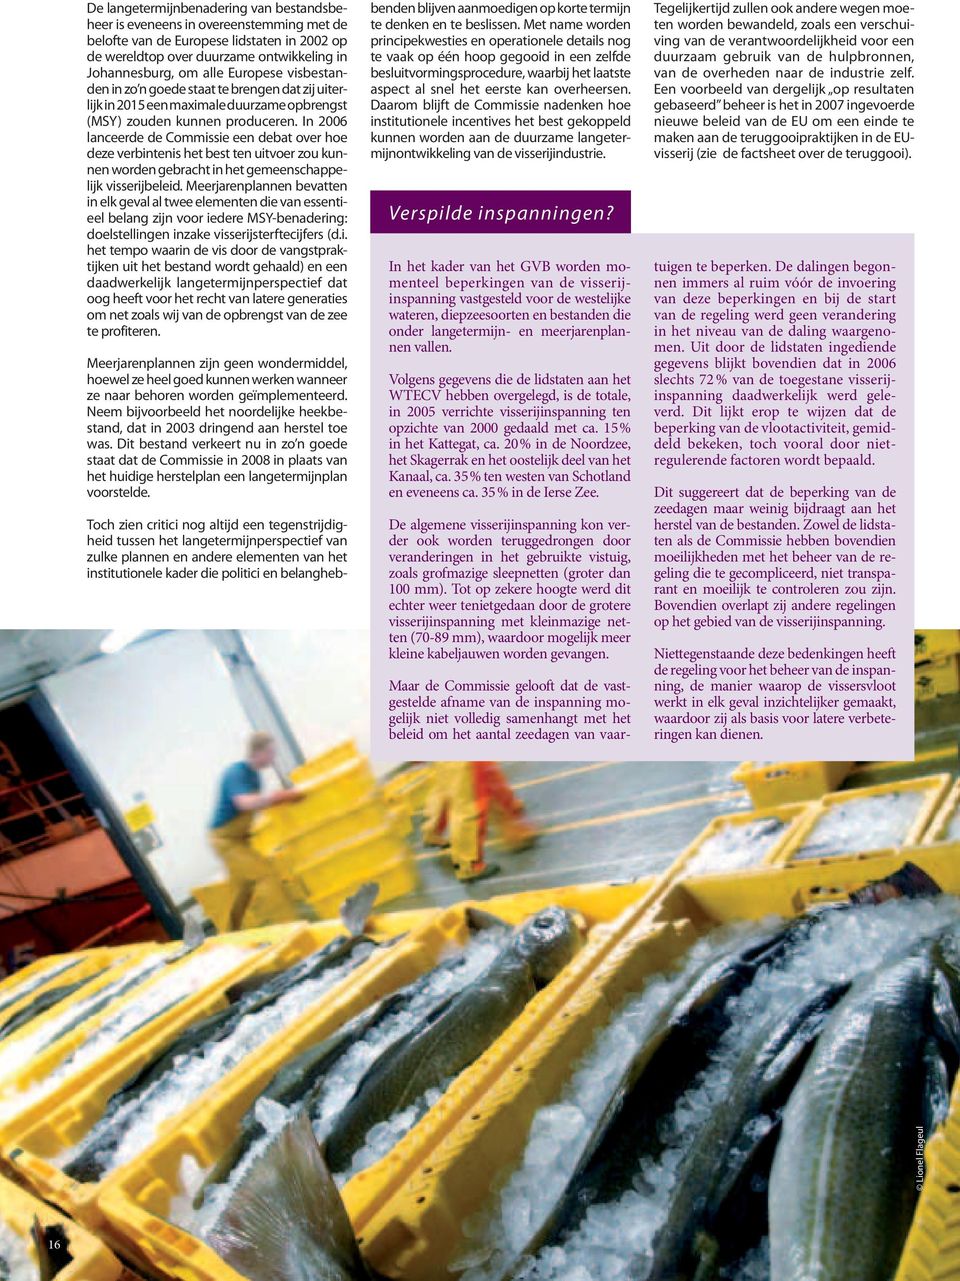 In 2006 lanceerde de Commissie een debat over hoe deze verbintenis het best ten uitvoer zou kunnen worden gebracht in het gemeenschappelijk visserijbeleid.